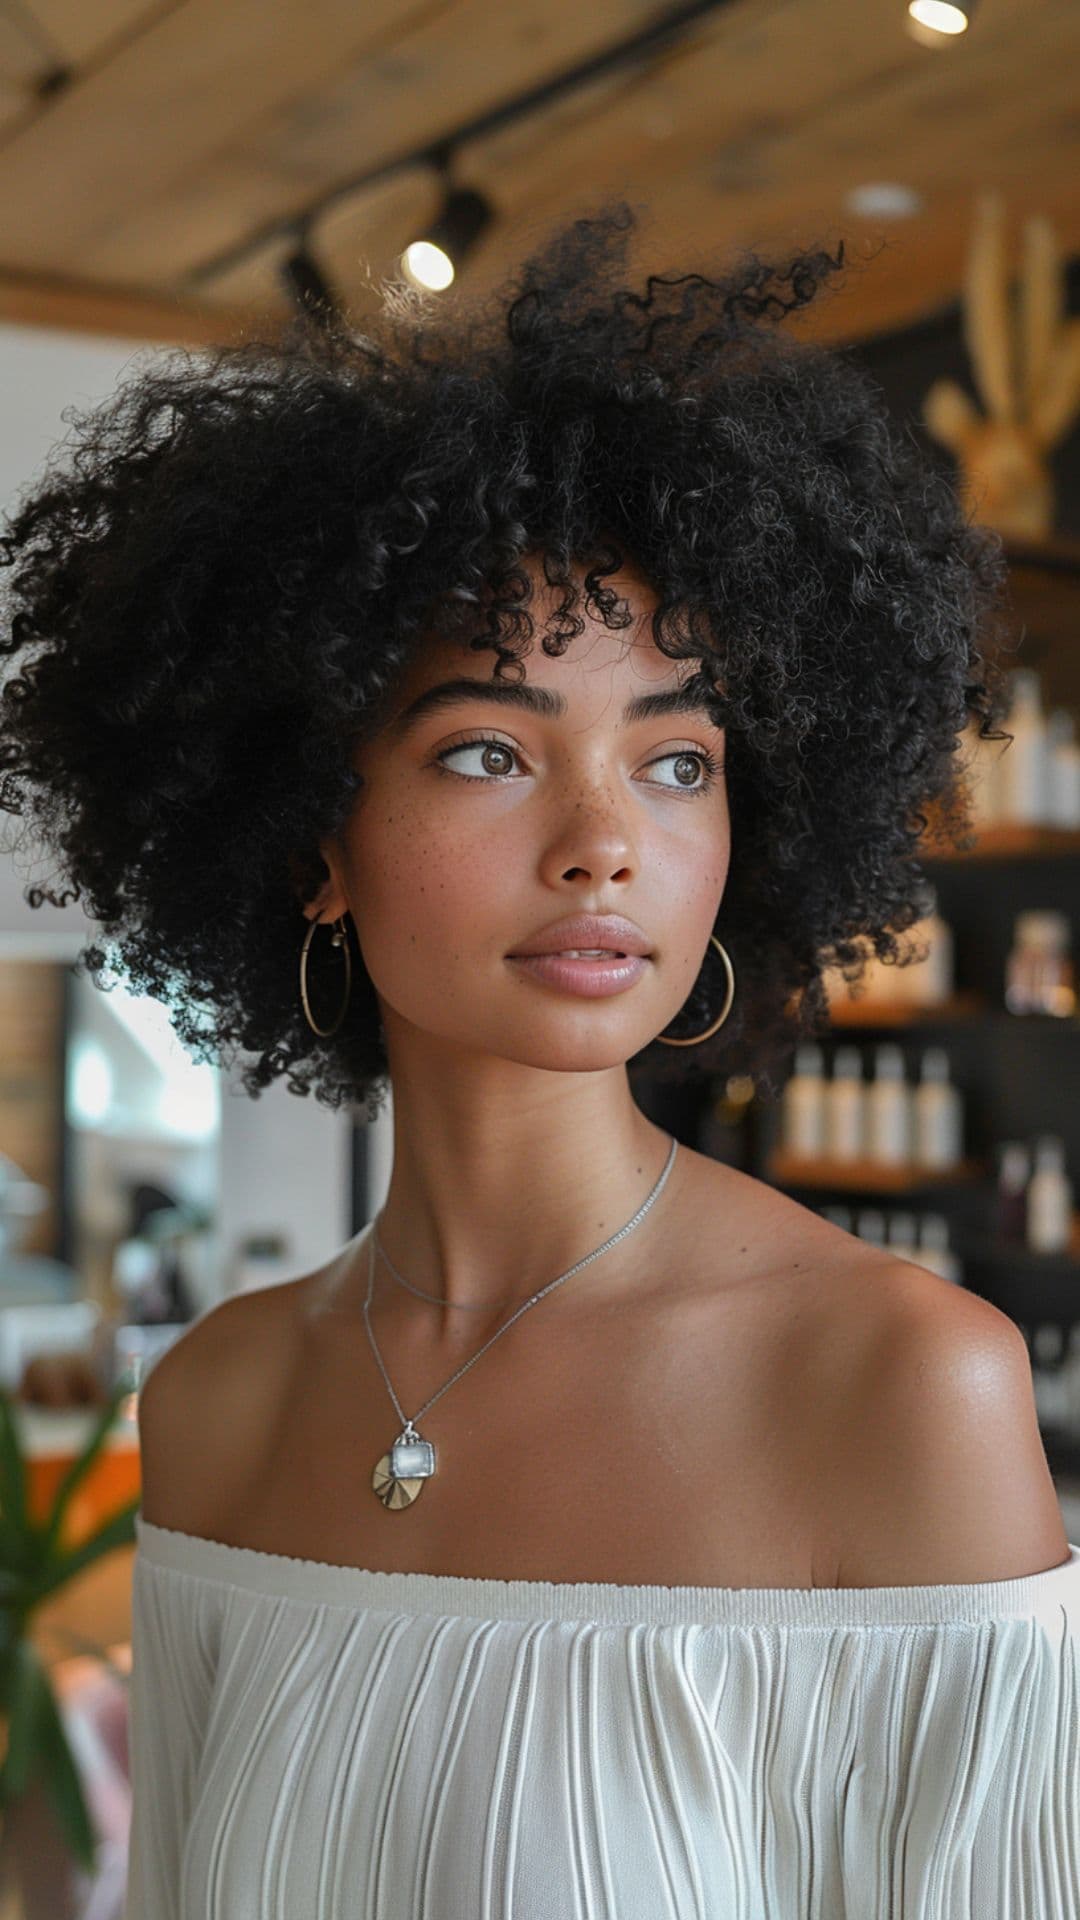 A black woman modelling a jet black afro hair.